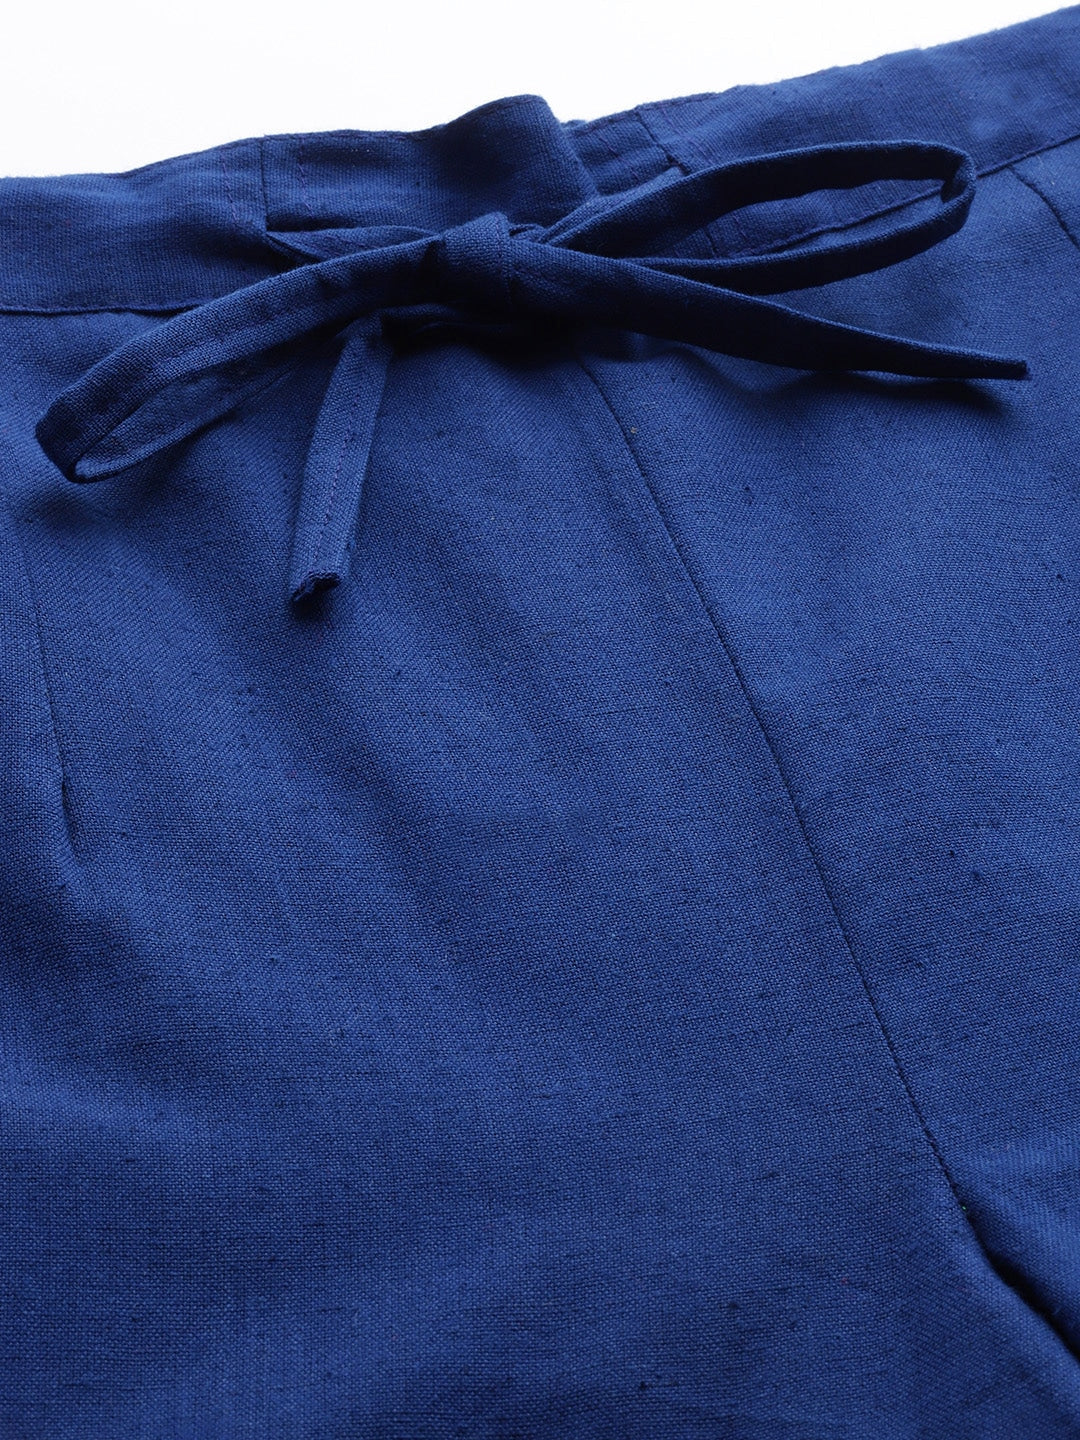 Blue Cotton Fit Trousers-Yufta Store-4206PNTBLS